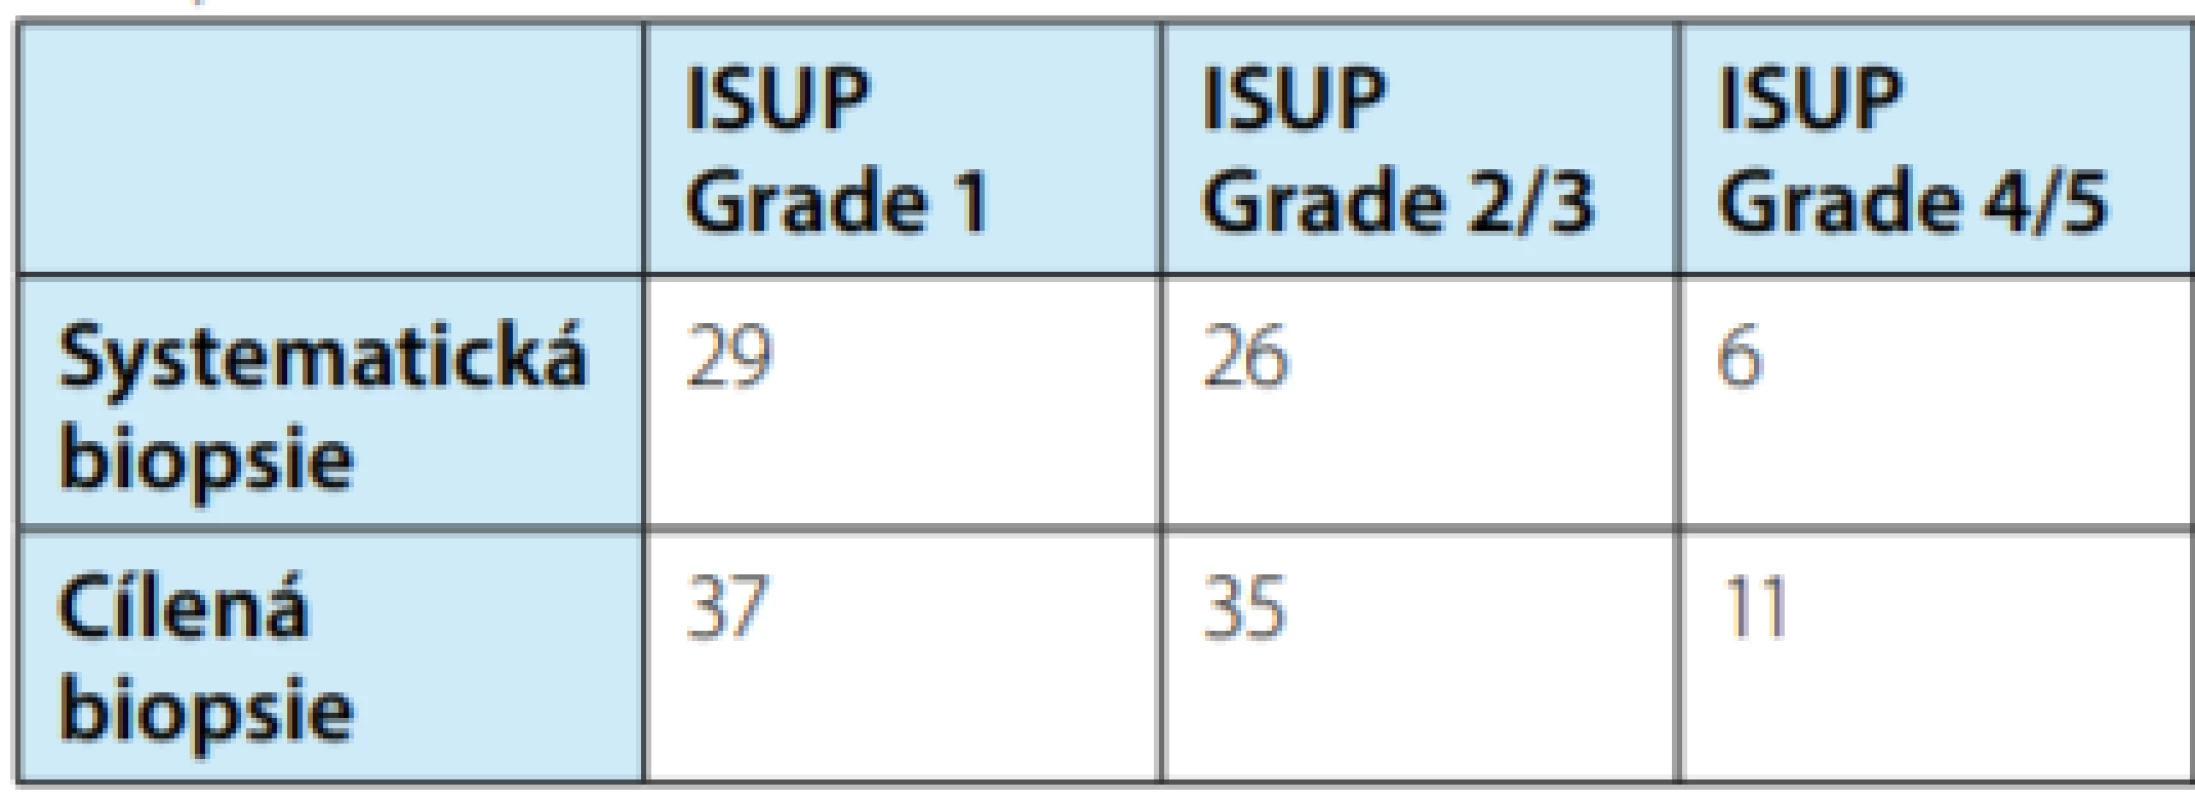 Tabulka porovnávající počty zachycených
případů ISUP grade group u 99 pacientů, kde byla
biopsie pozitivní<br>
Tab. 1. Table comparing the numbers of detected cases
of the ISUP grade group in 99 patients where the biopsy
was positive